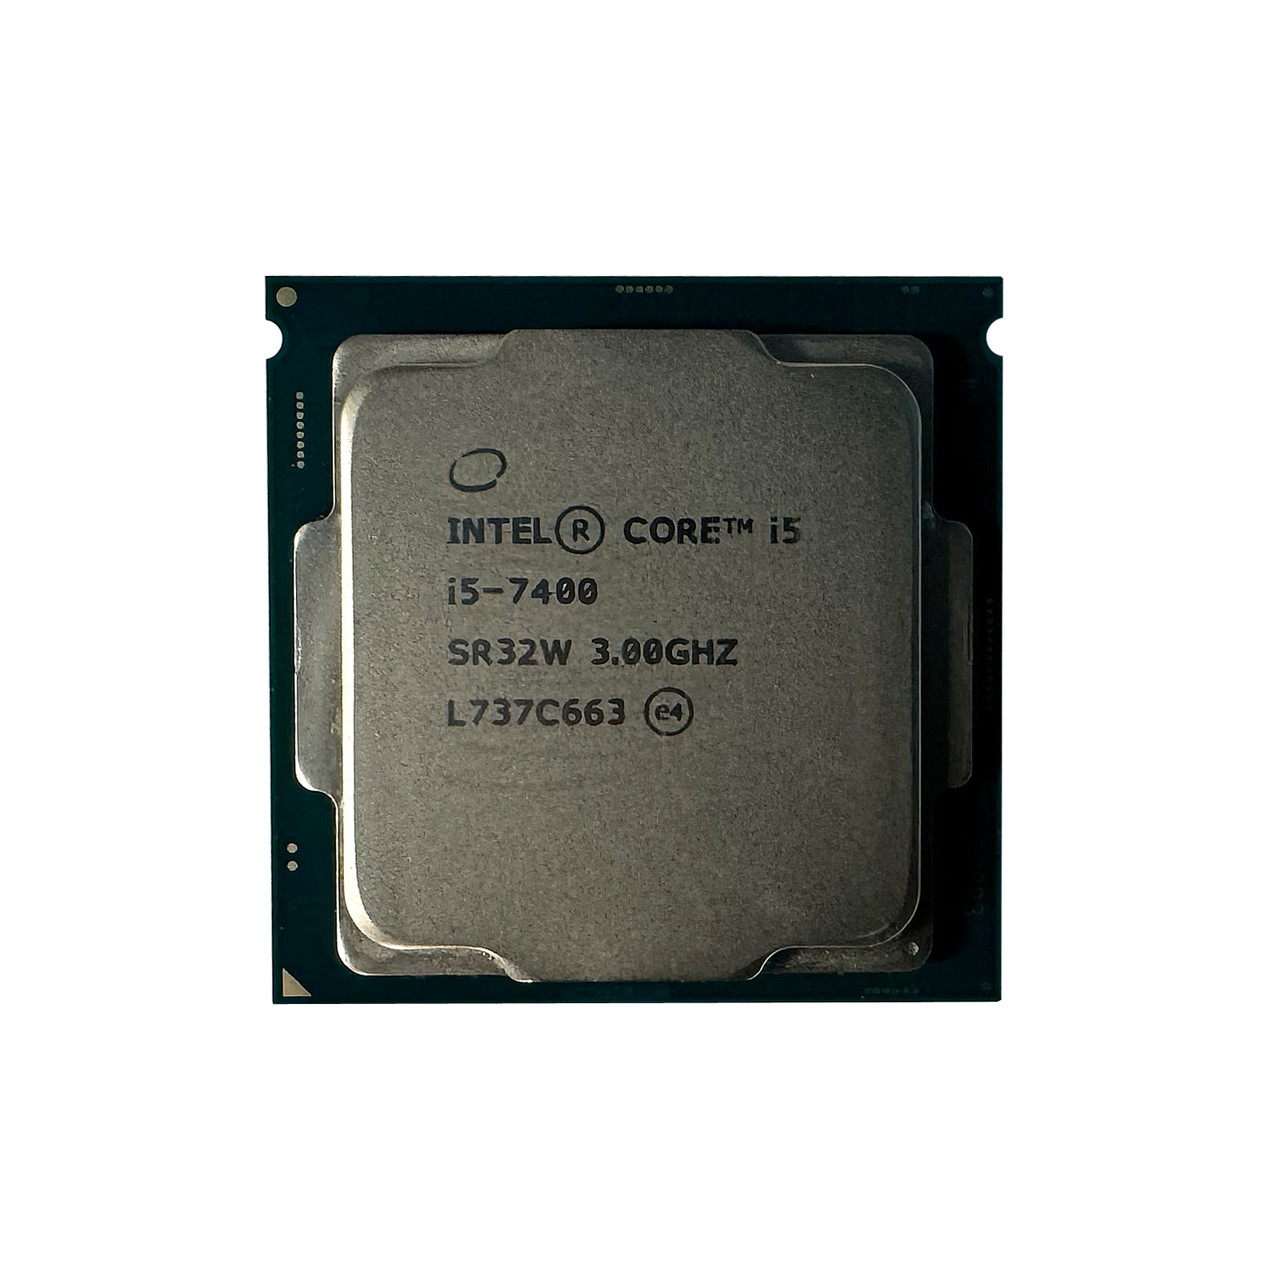 Intel SR32W i5-7400 QC 3.0Ghz 6MB 8GTs Processor